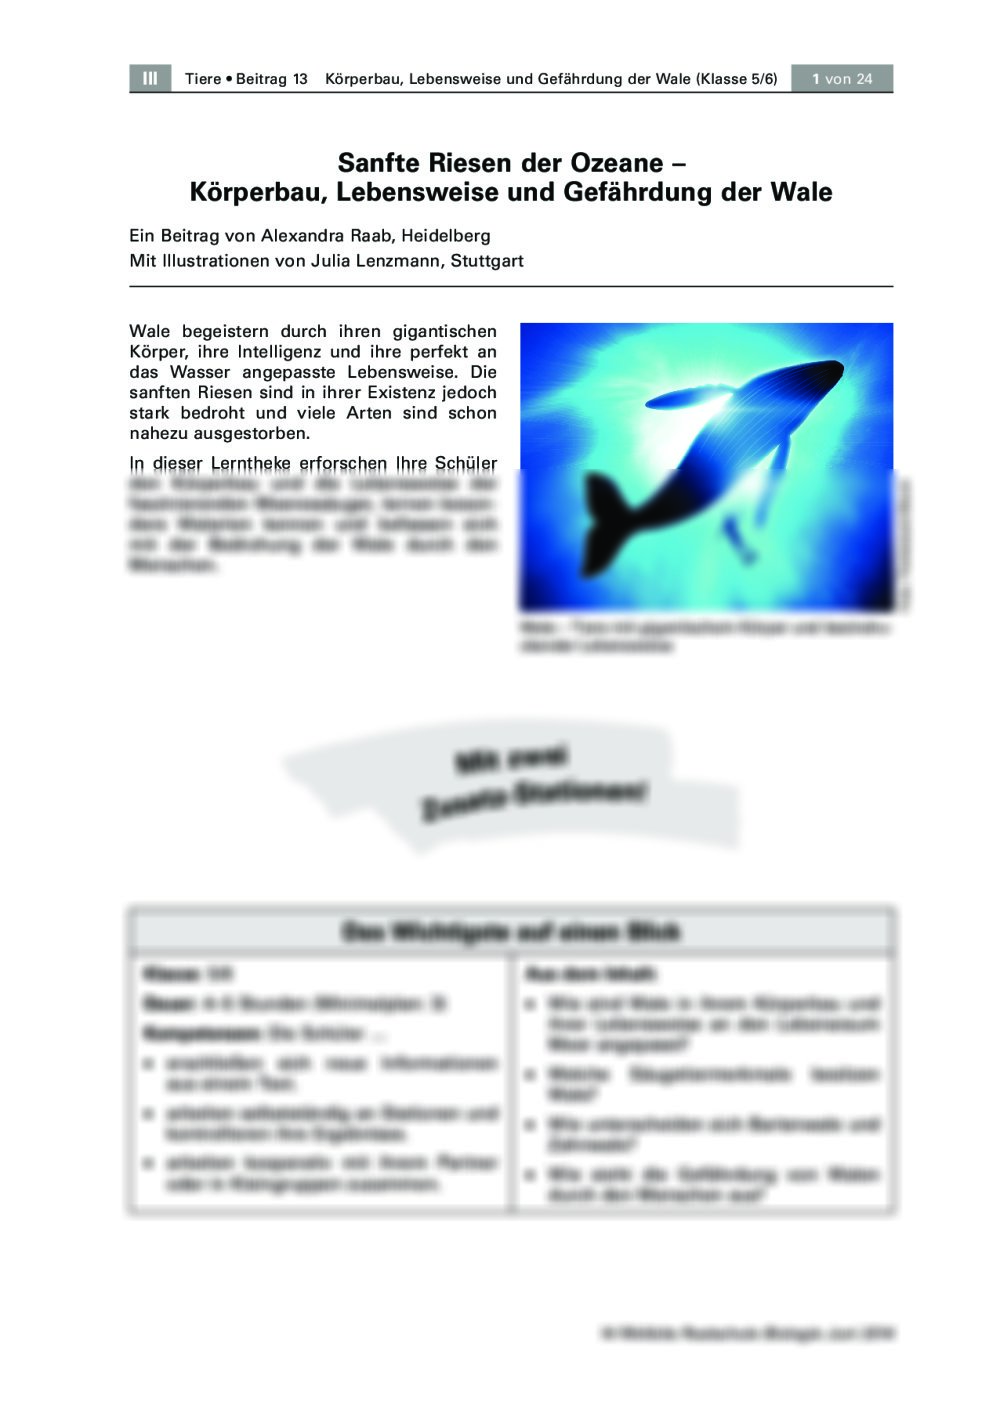 Körperbau, Lebensweise und Gefährdung der Wale - Seite 1